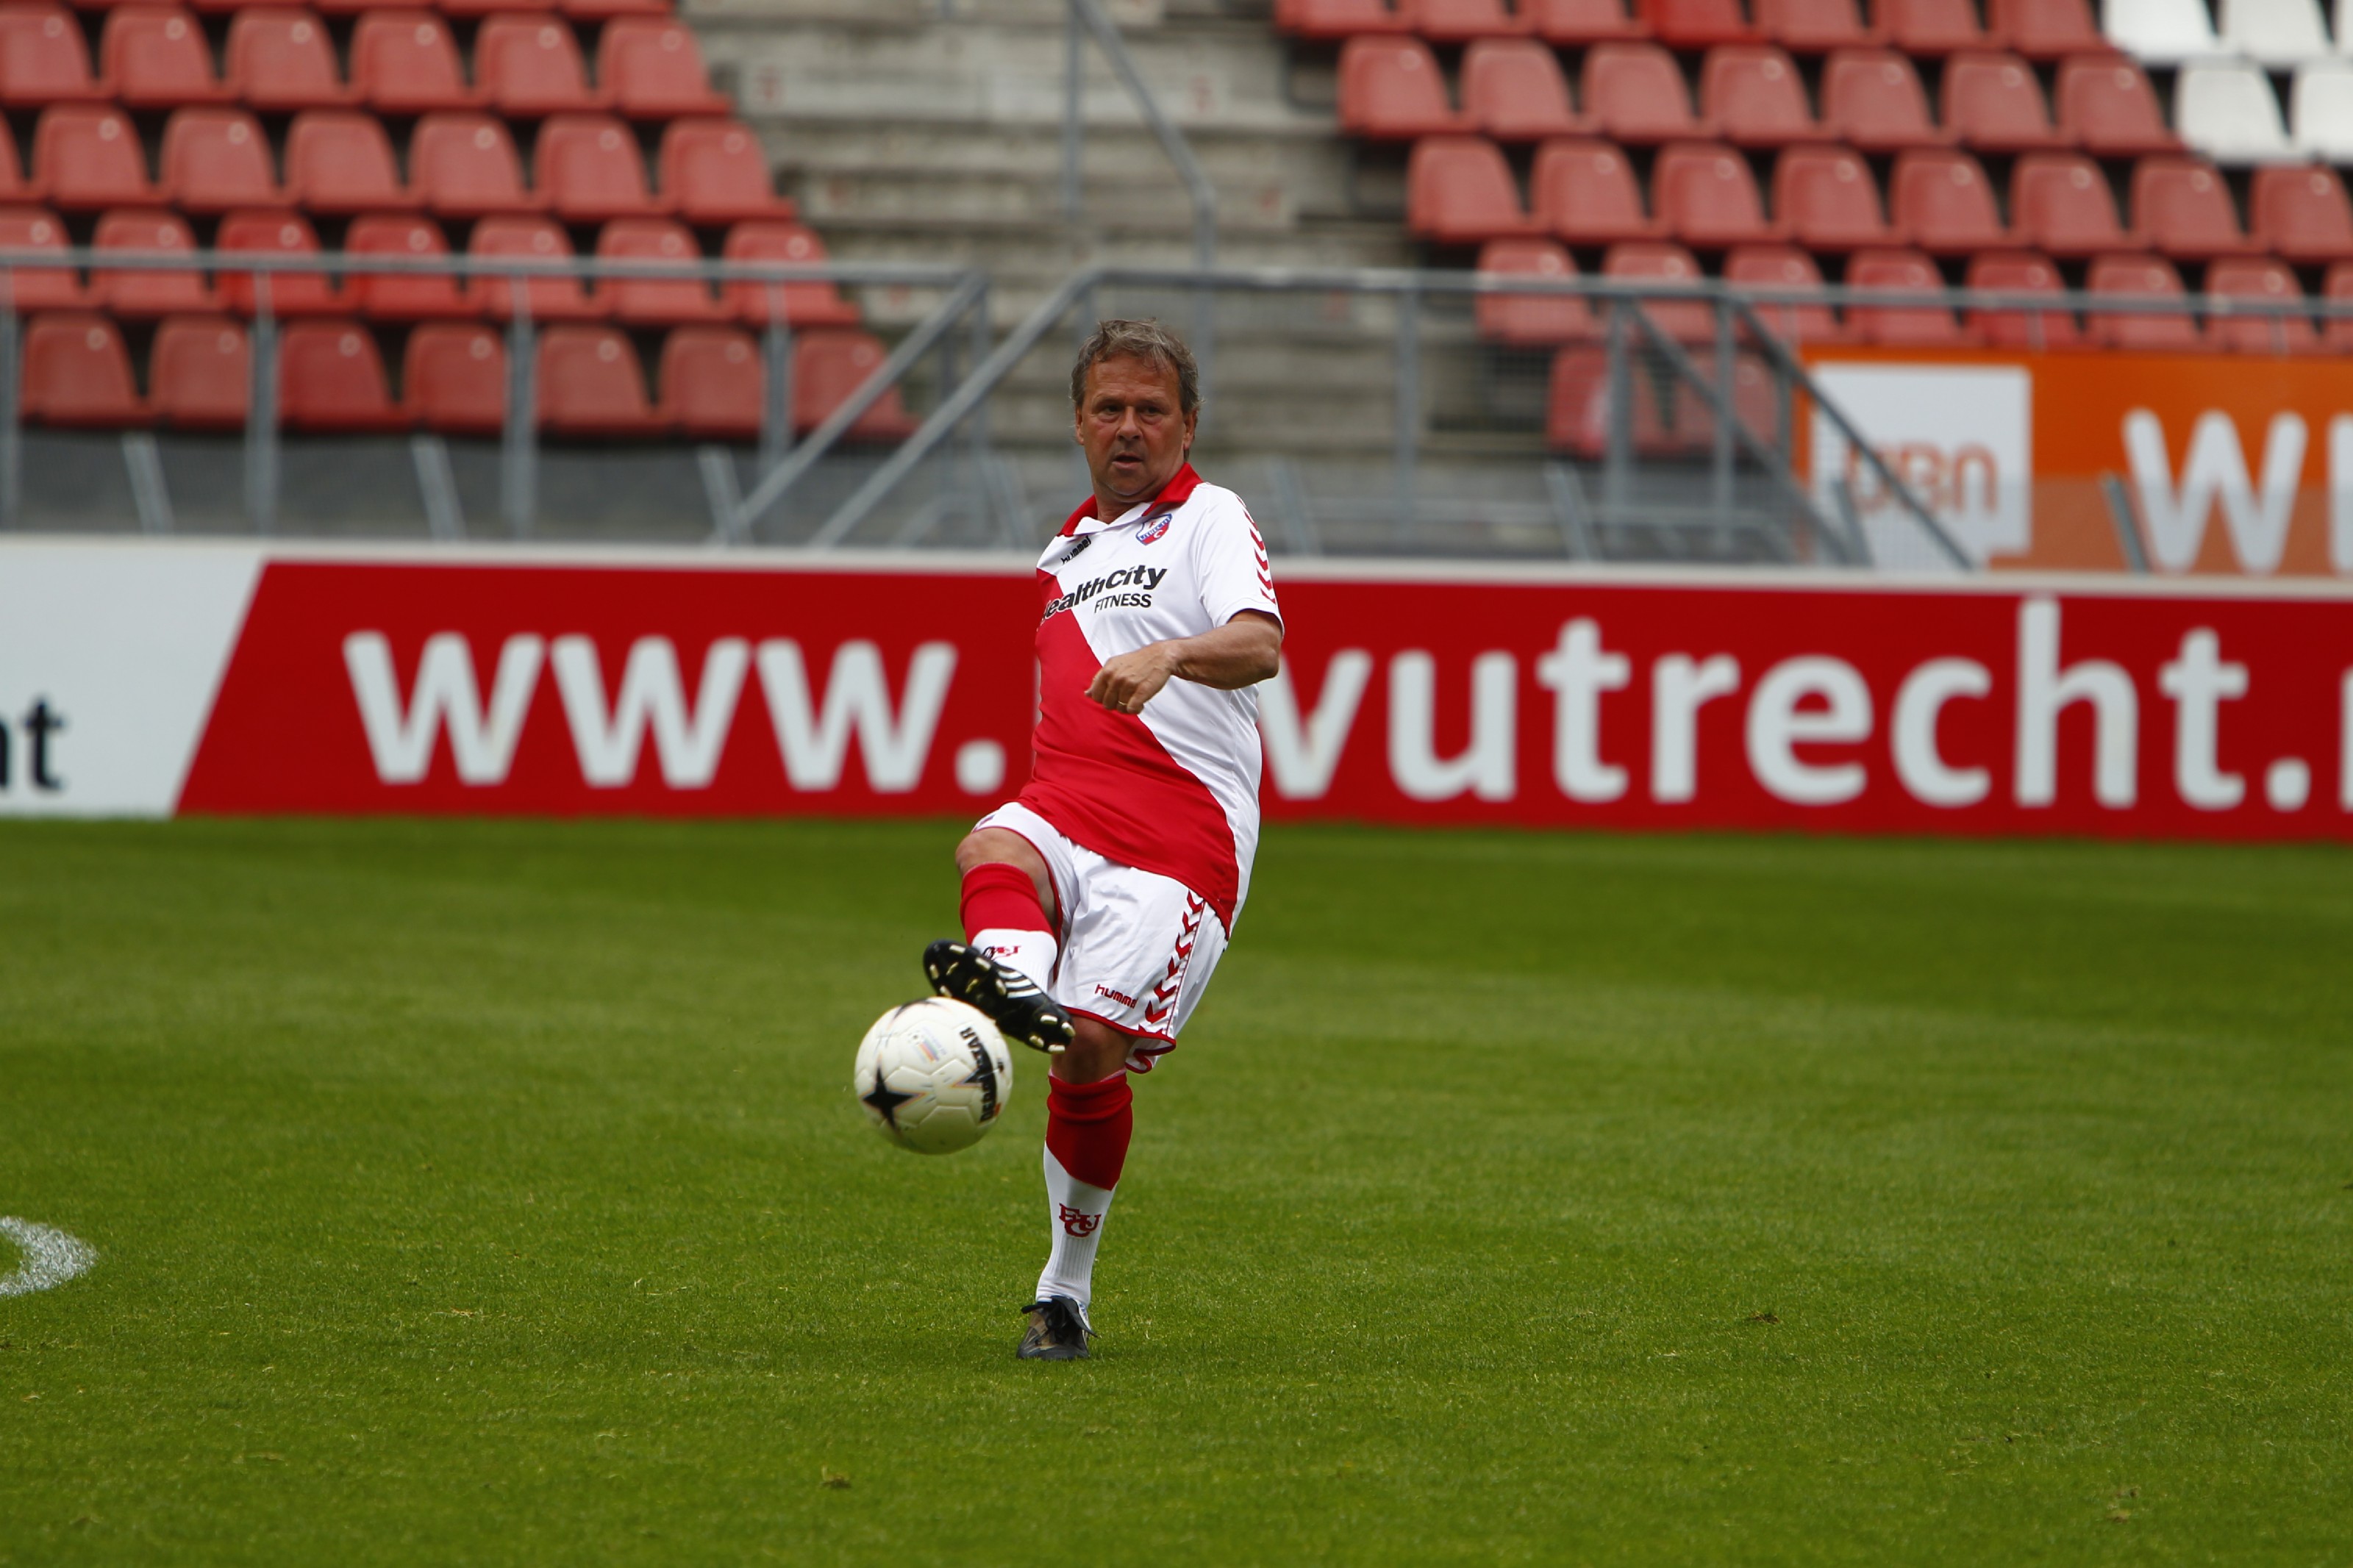 Oud FC Utrecht in actie tijdens KiKa Summer Biz Tournament